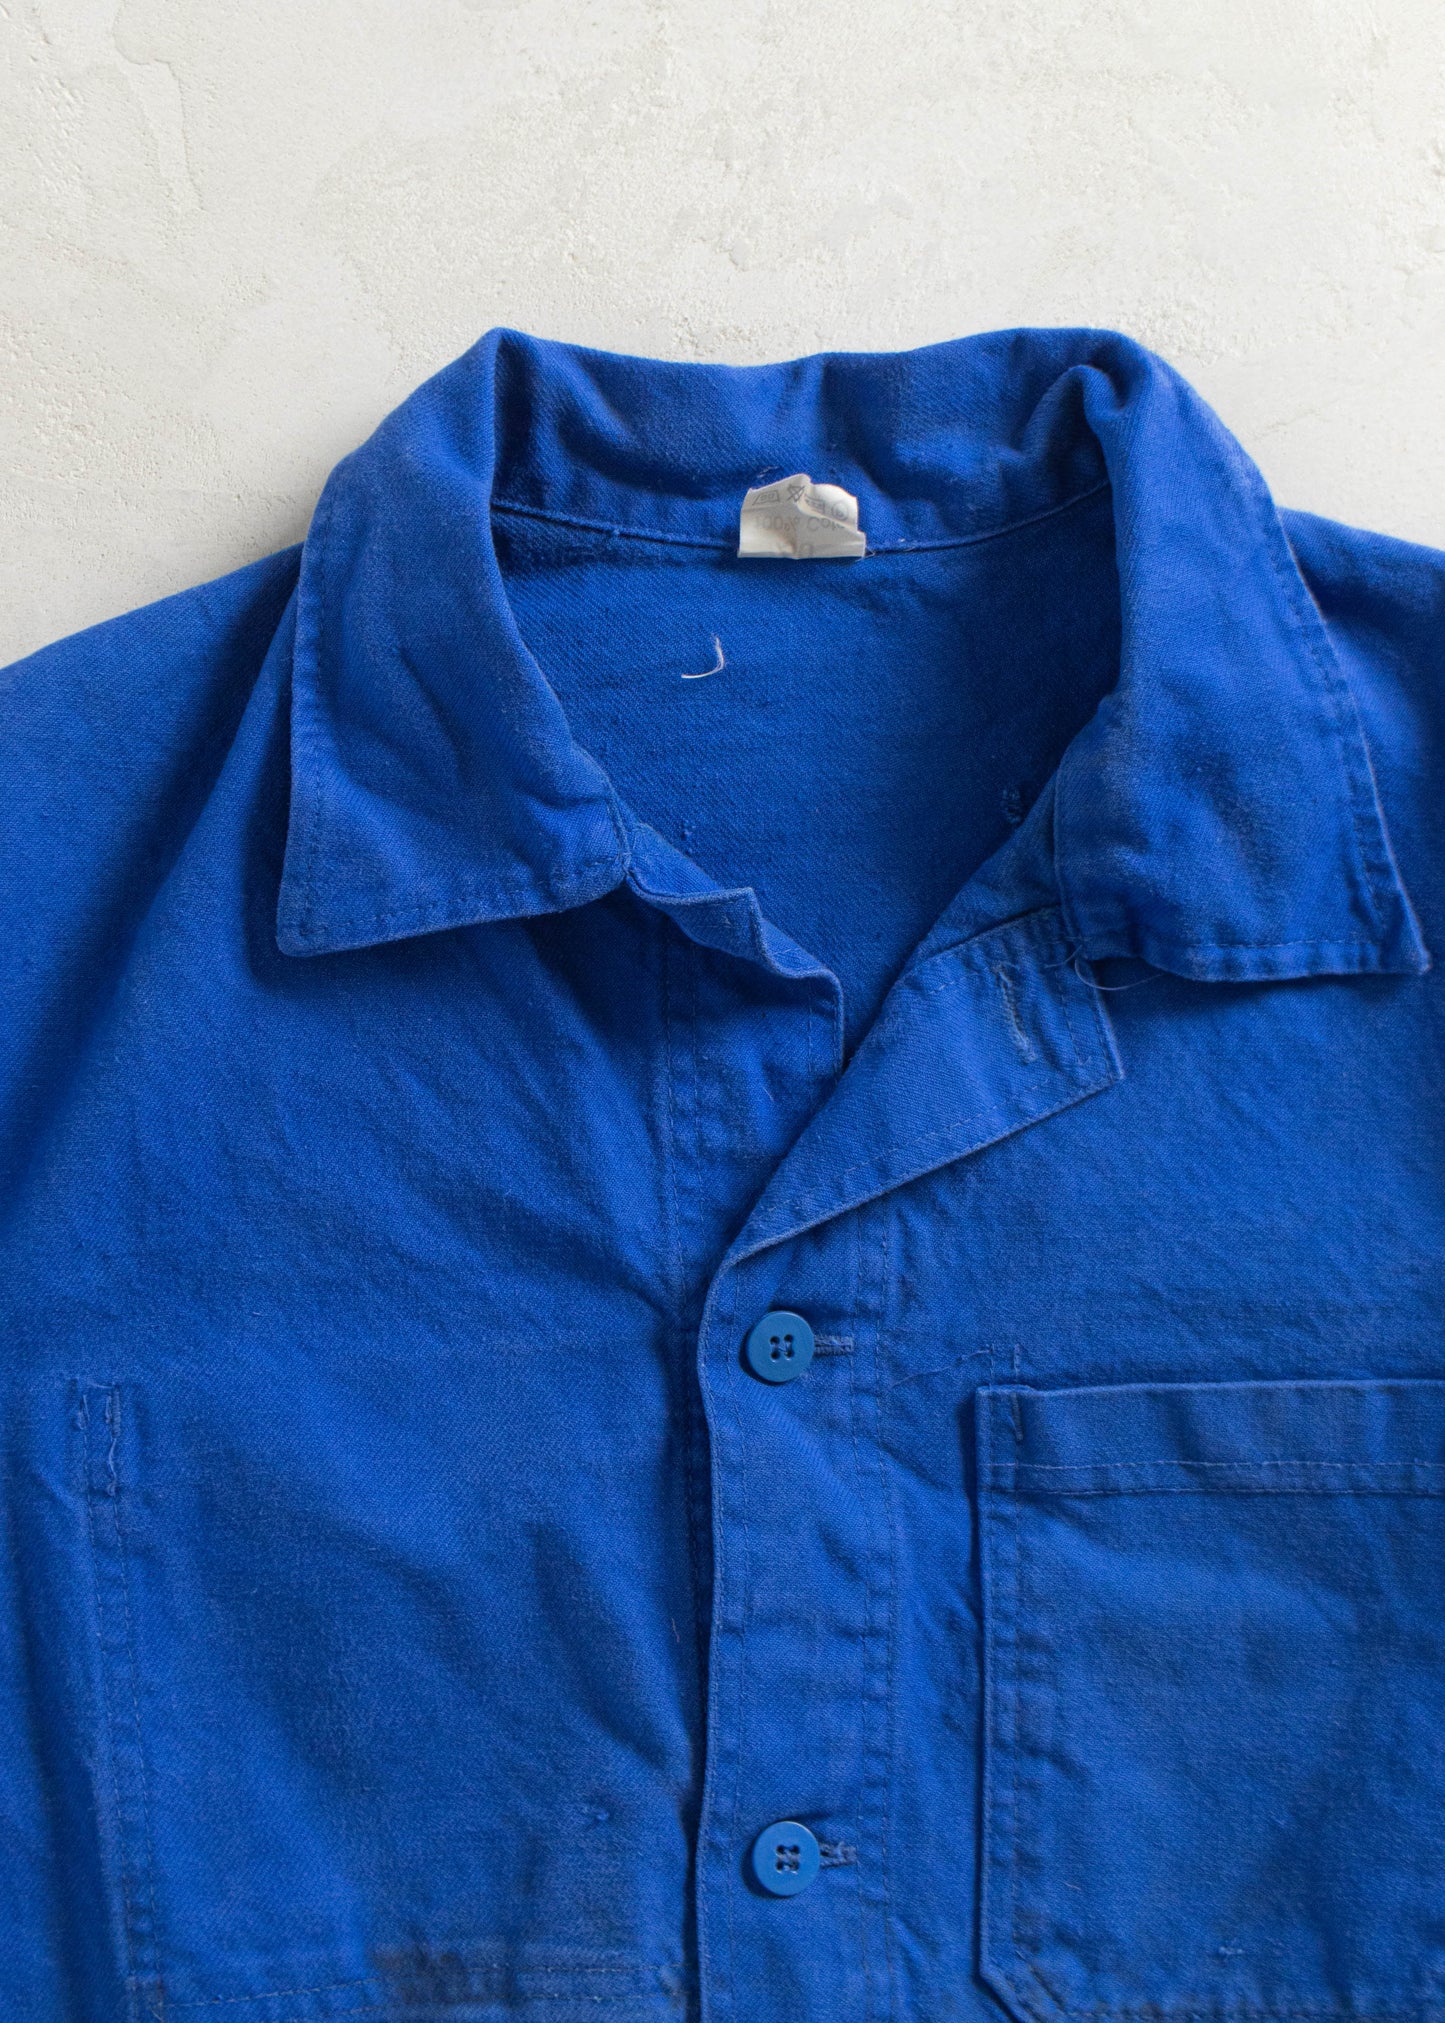 1980s Bleu de Travail French Workwear Chore Jacket Size M/L